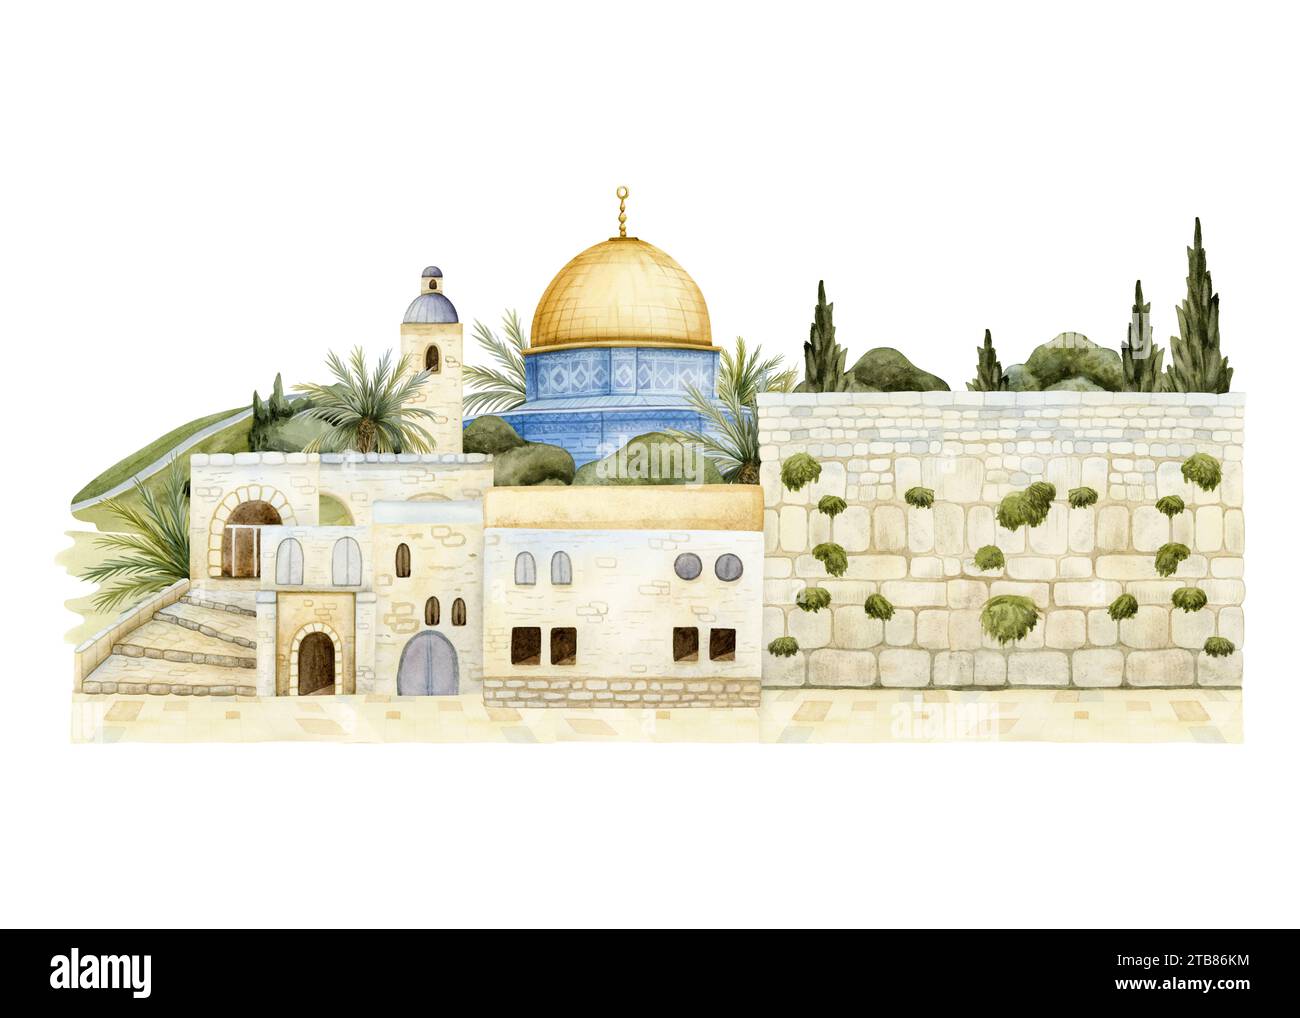 Mur occidental et Dôme du Rocher dans la vieille ville de Jérusalem illustration aquarelle. Paysage urbain de la capitale israélienne Banque D'Images